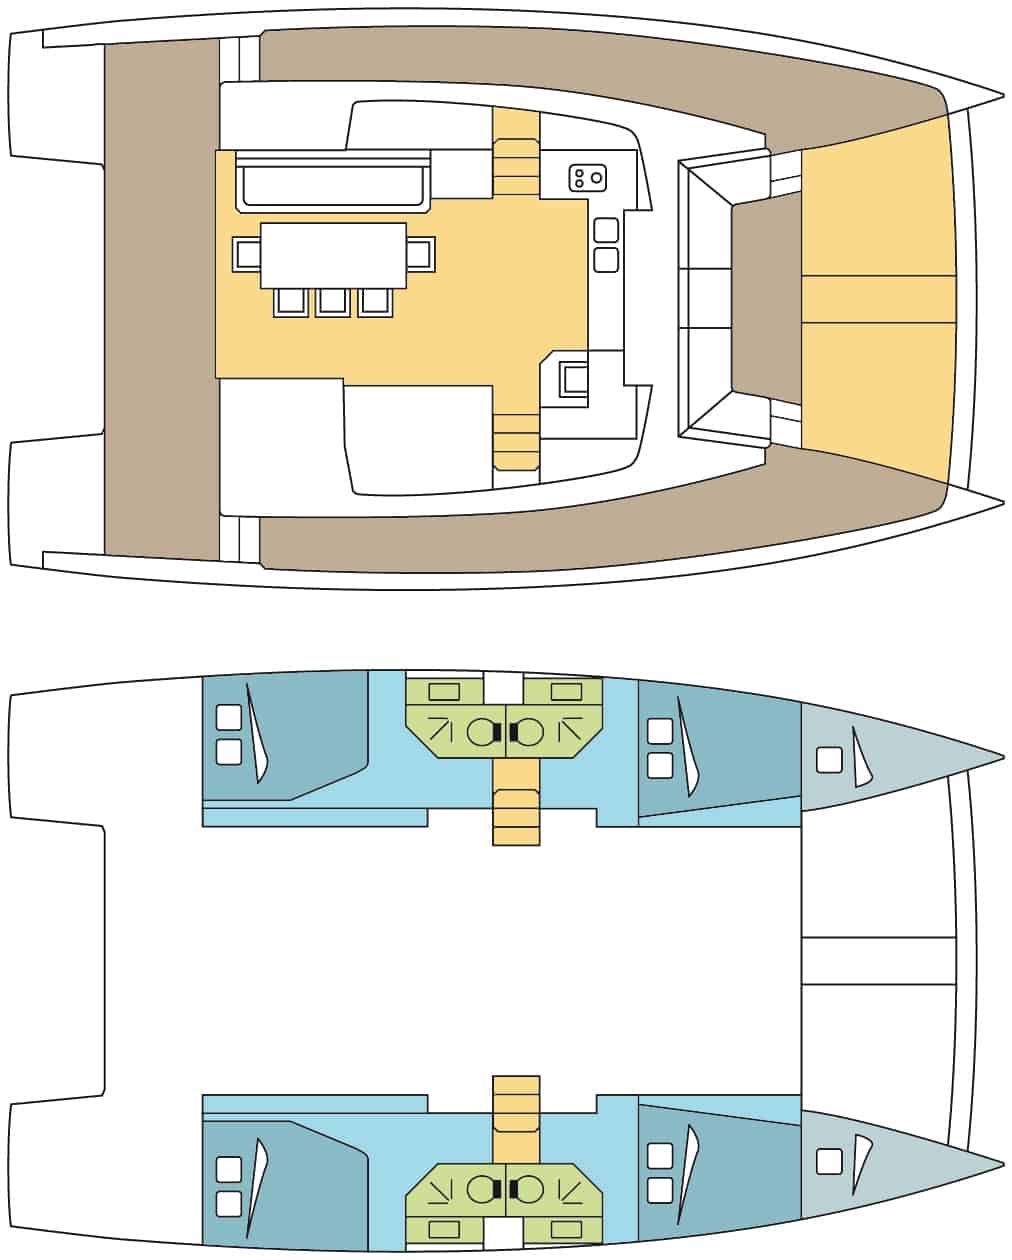 Bali 4.3 Catamaran layout of saloon and cabins